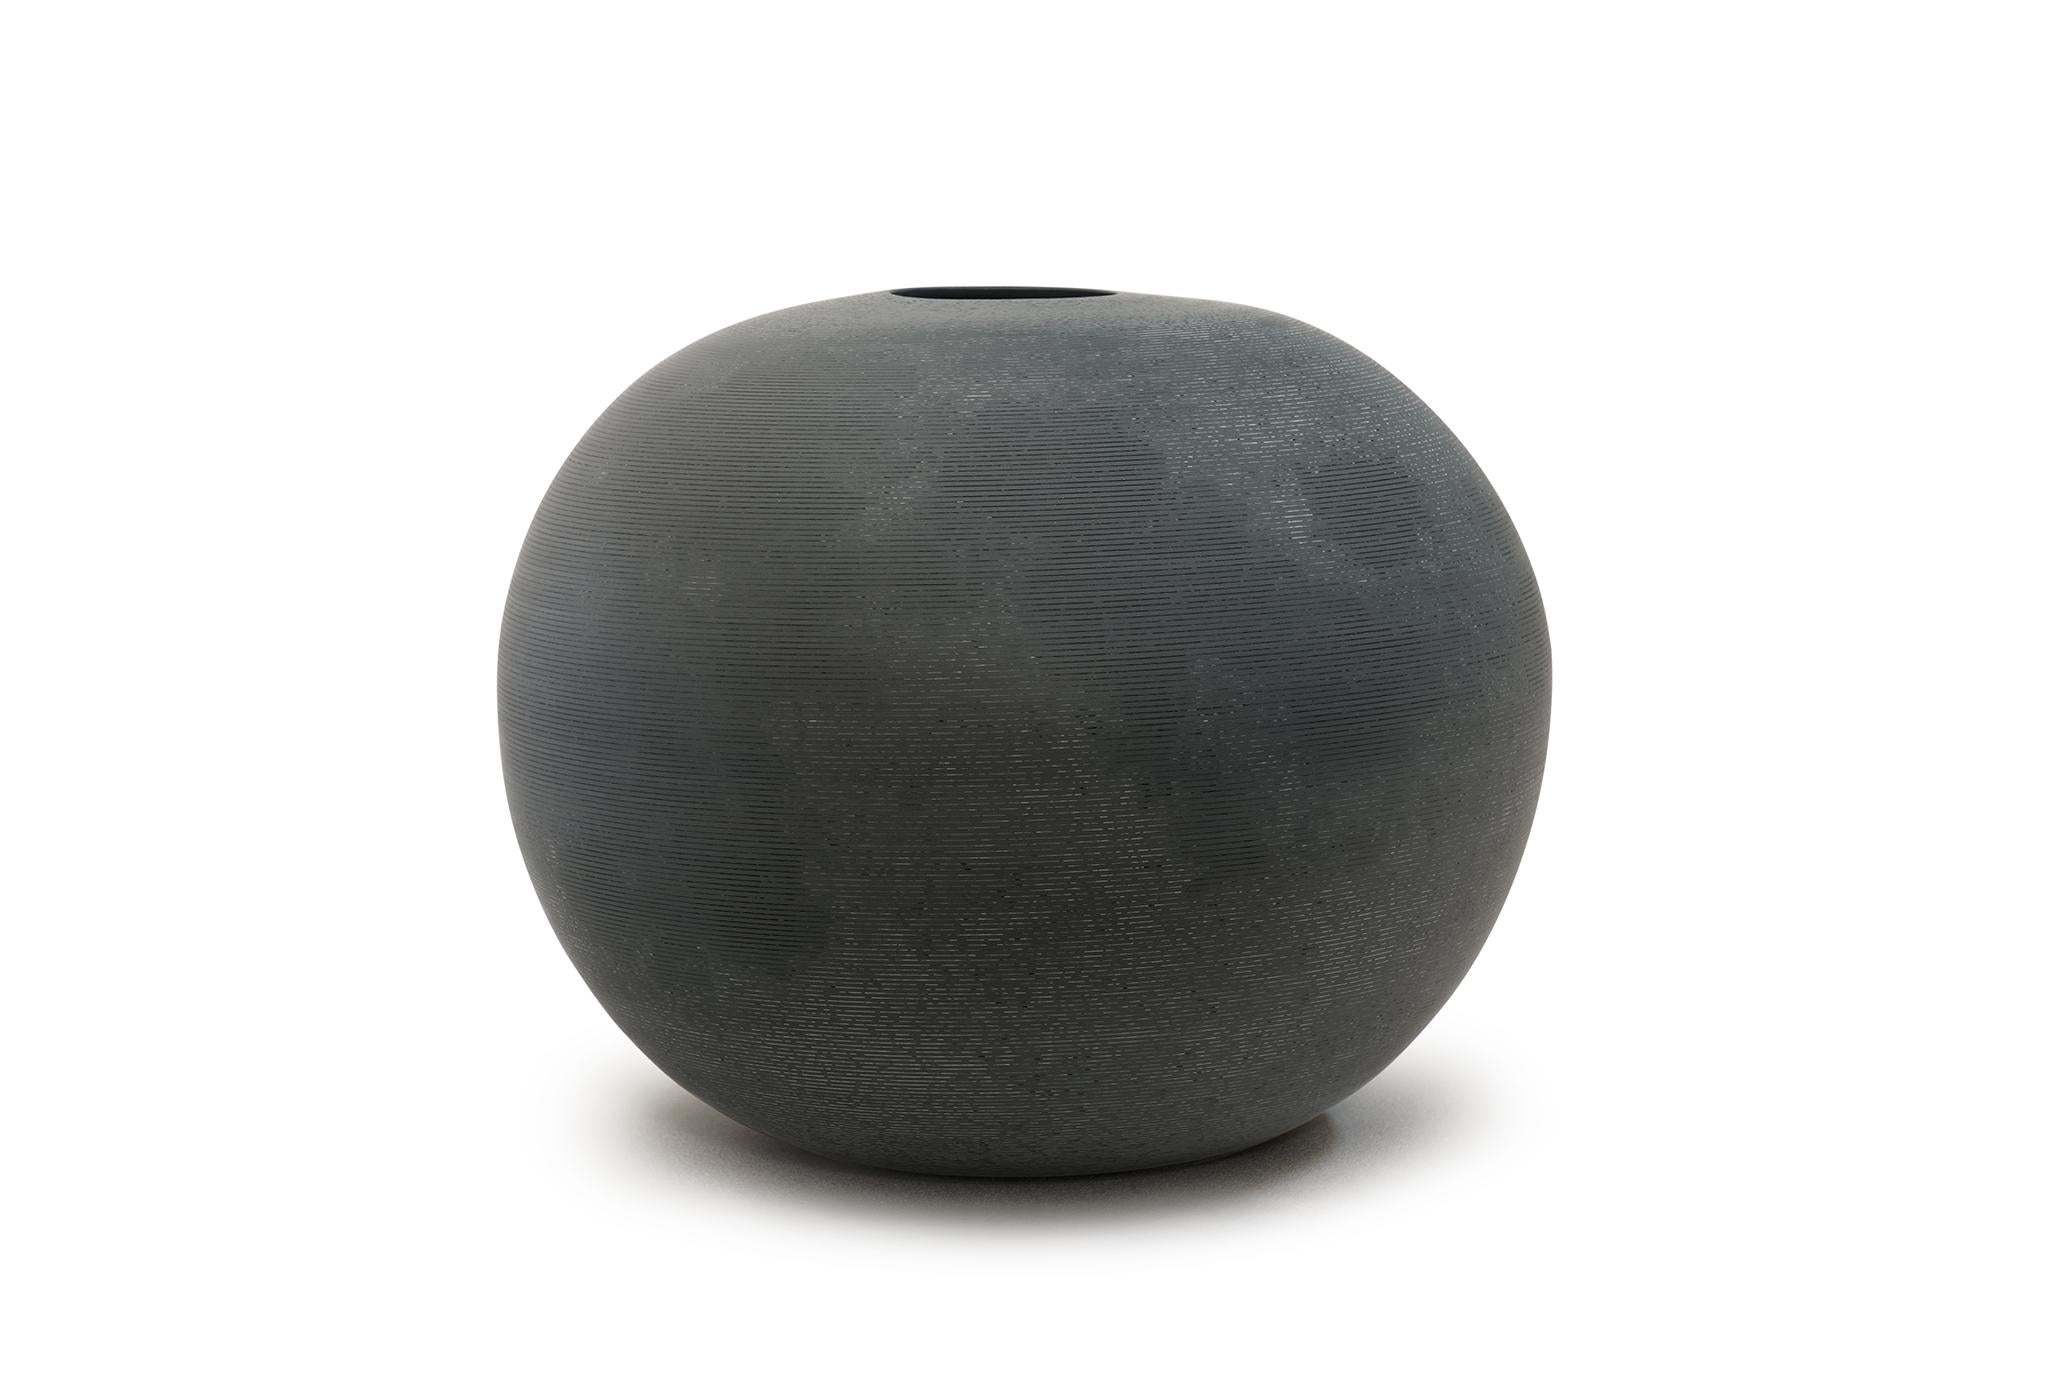 Vase de lune de Jung Hong
Pièce unique
Dimensions : L 43 x P 43 x H 34 cm
Matériaux : Porcelaine

Porcelaine teintée, incrustation, cuisson à haute température, surface soyeuse et polie (l'image de la carte de la lune est incrustée/dessinée à la